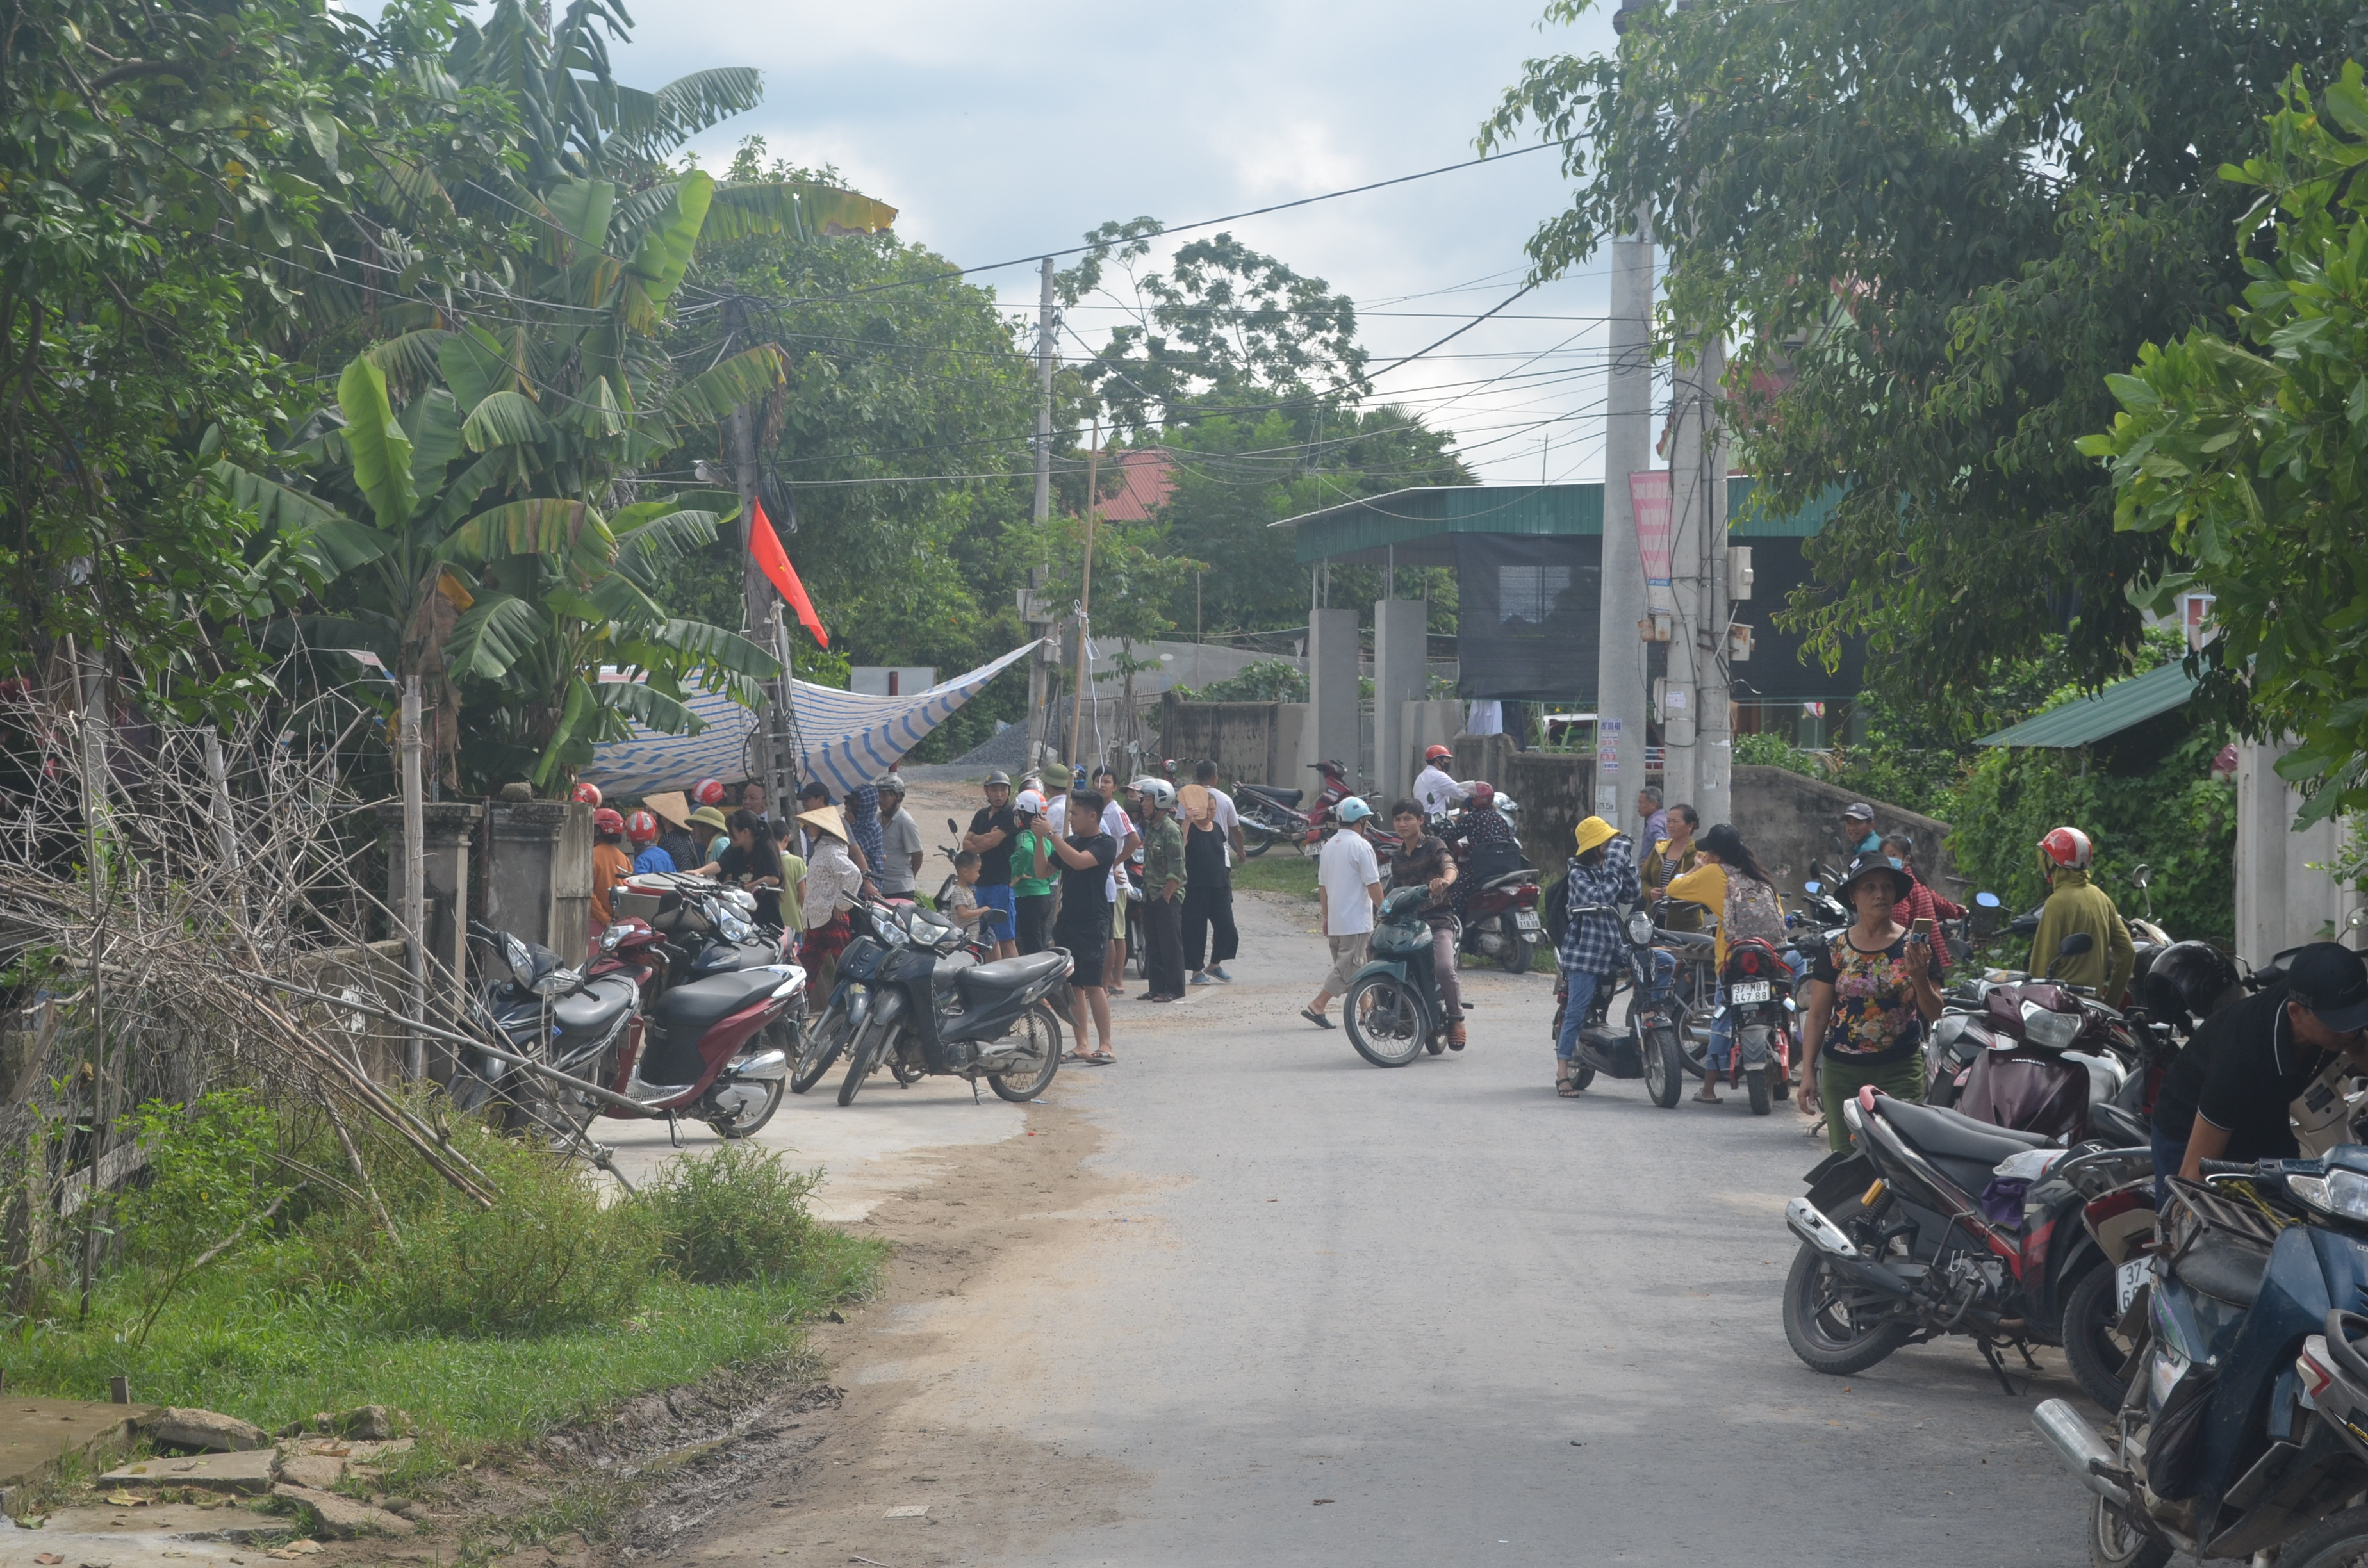 Từ đầu chiều ngày 20/8/2020, có nhiều người dân xóm Phượng Sơn đã kéo đến khu vực lân cận nhà ông Trần Đình Đức. Ảnh: THanh Hải